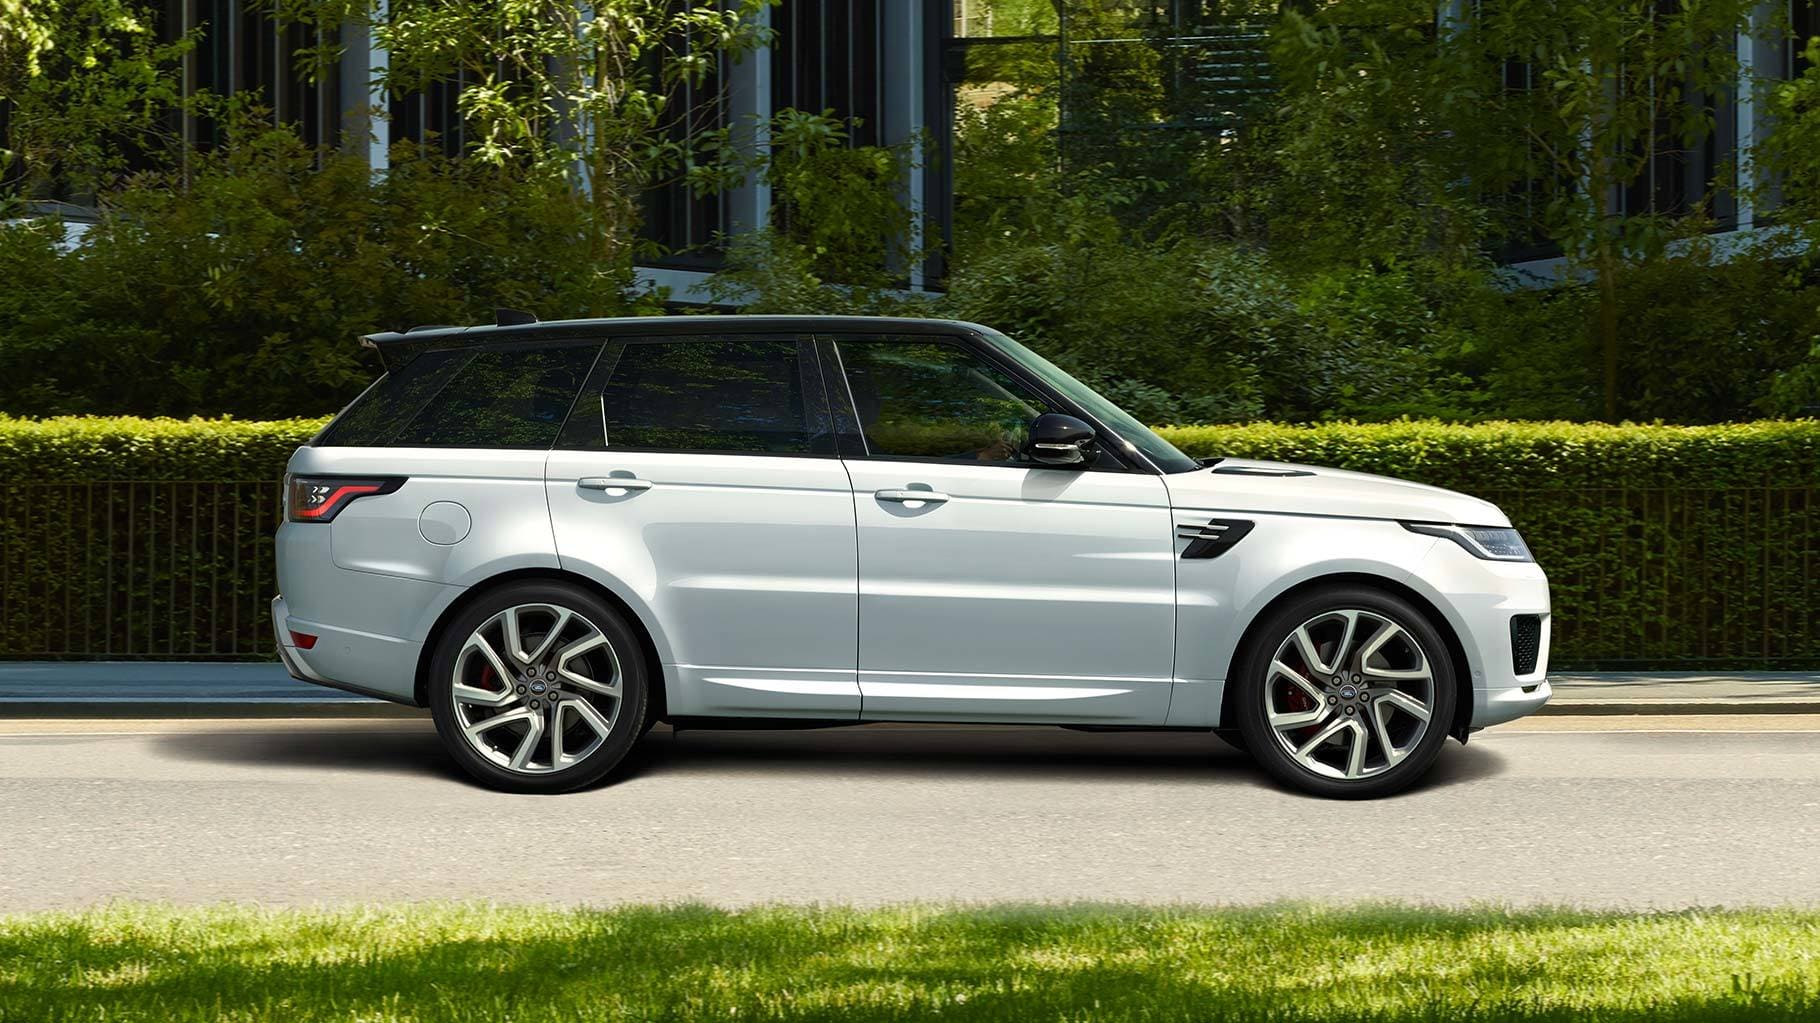 Range Rover Sport a Imola: il SUV dinamico